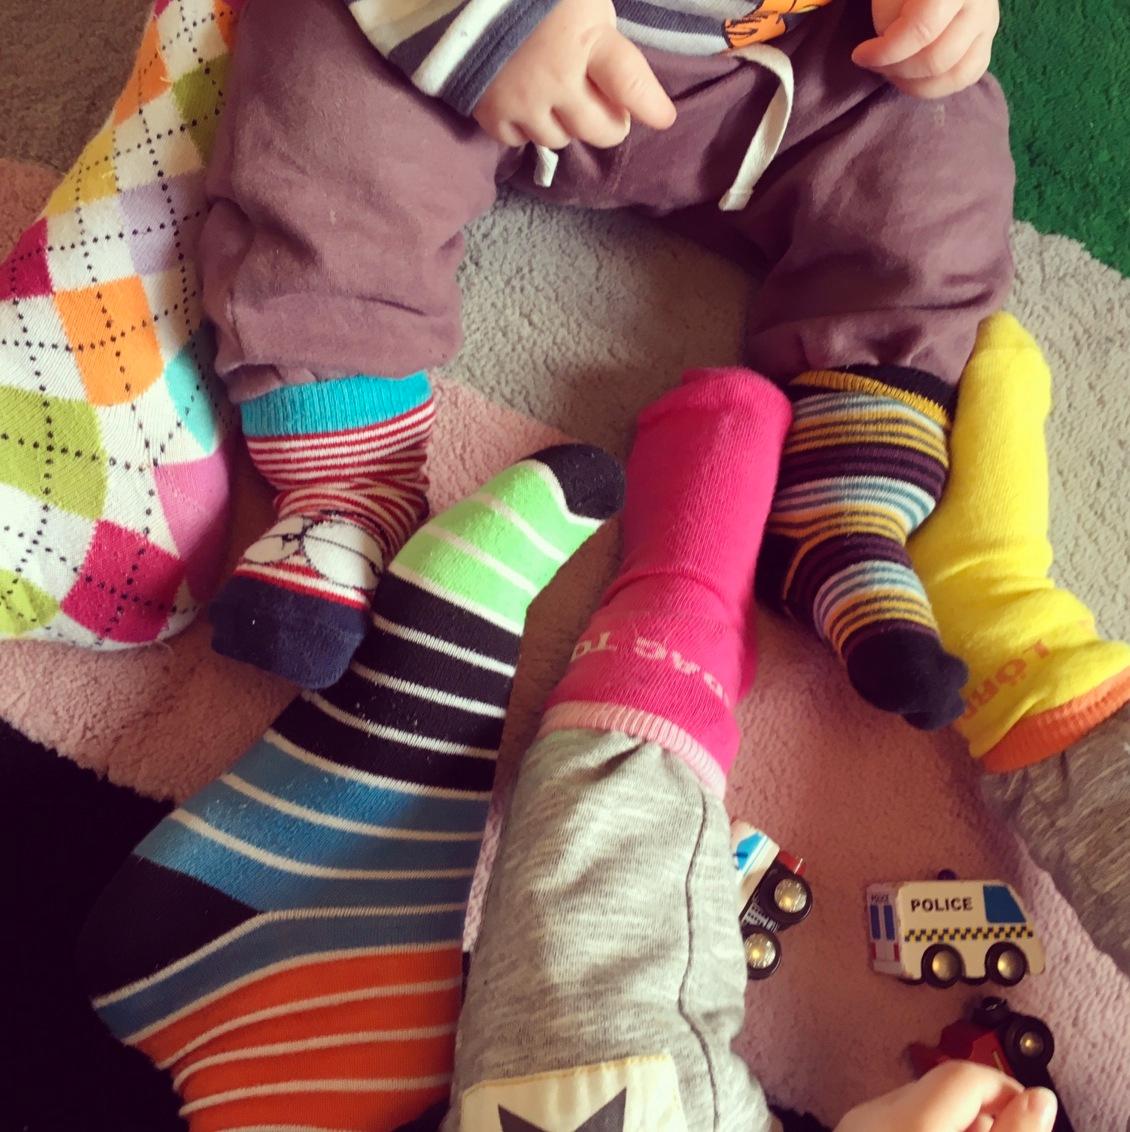 ”En så enkel grej att rocka sockorna och visa sitt stöd. Vi gillar olika och det lär jag mina barn från början.”